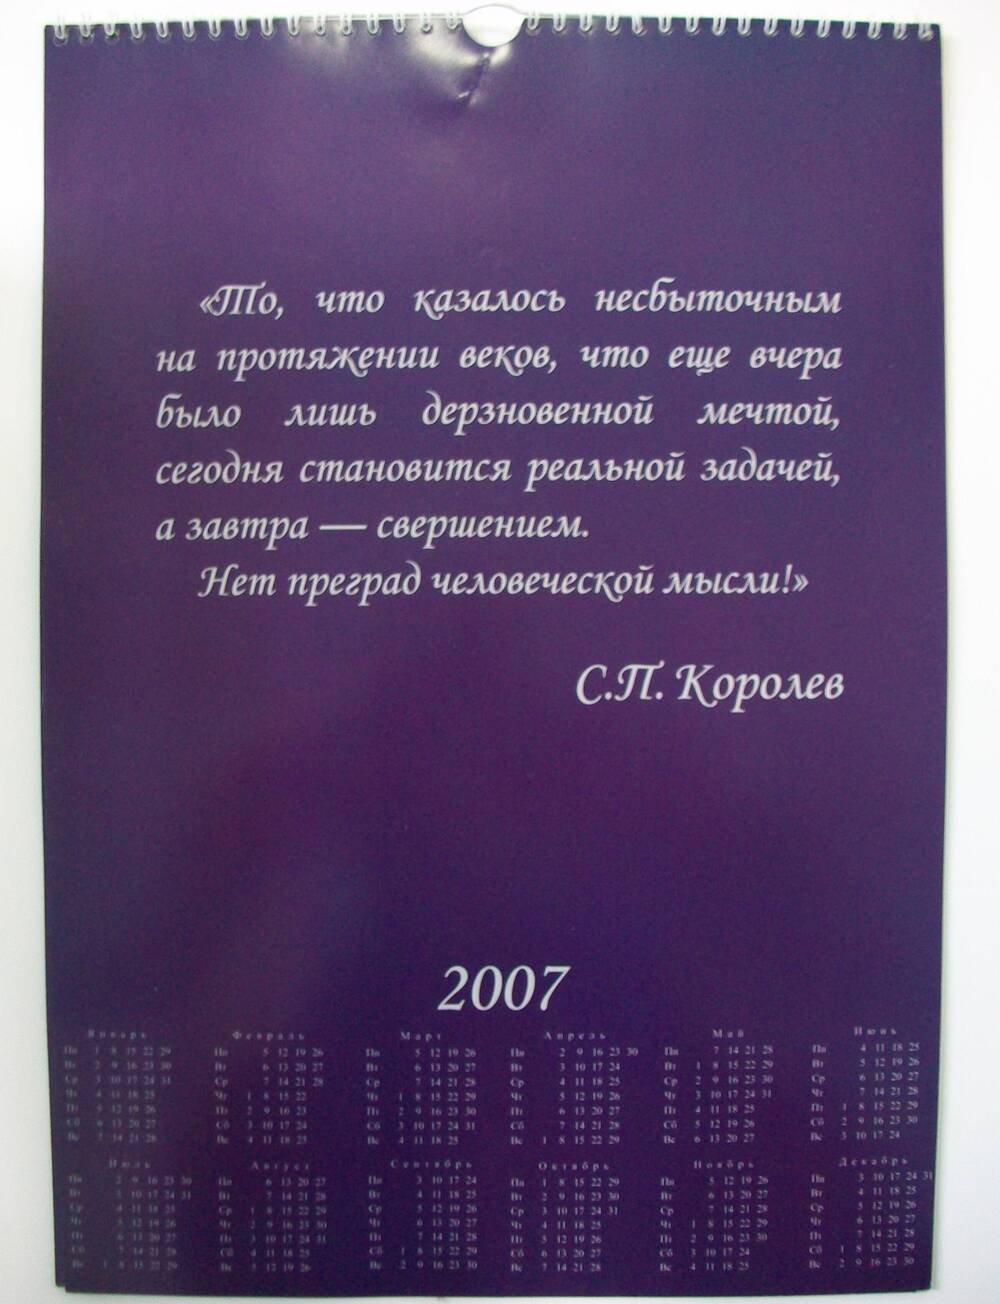 Календарь на 2007 год, посвященный 100-летию со дня рождения С.П. Королева.